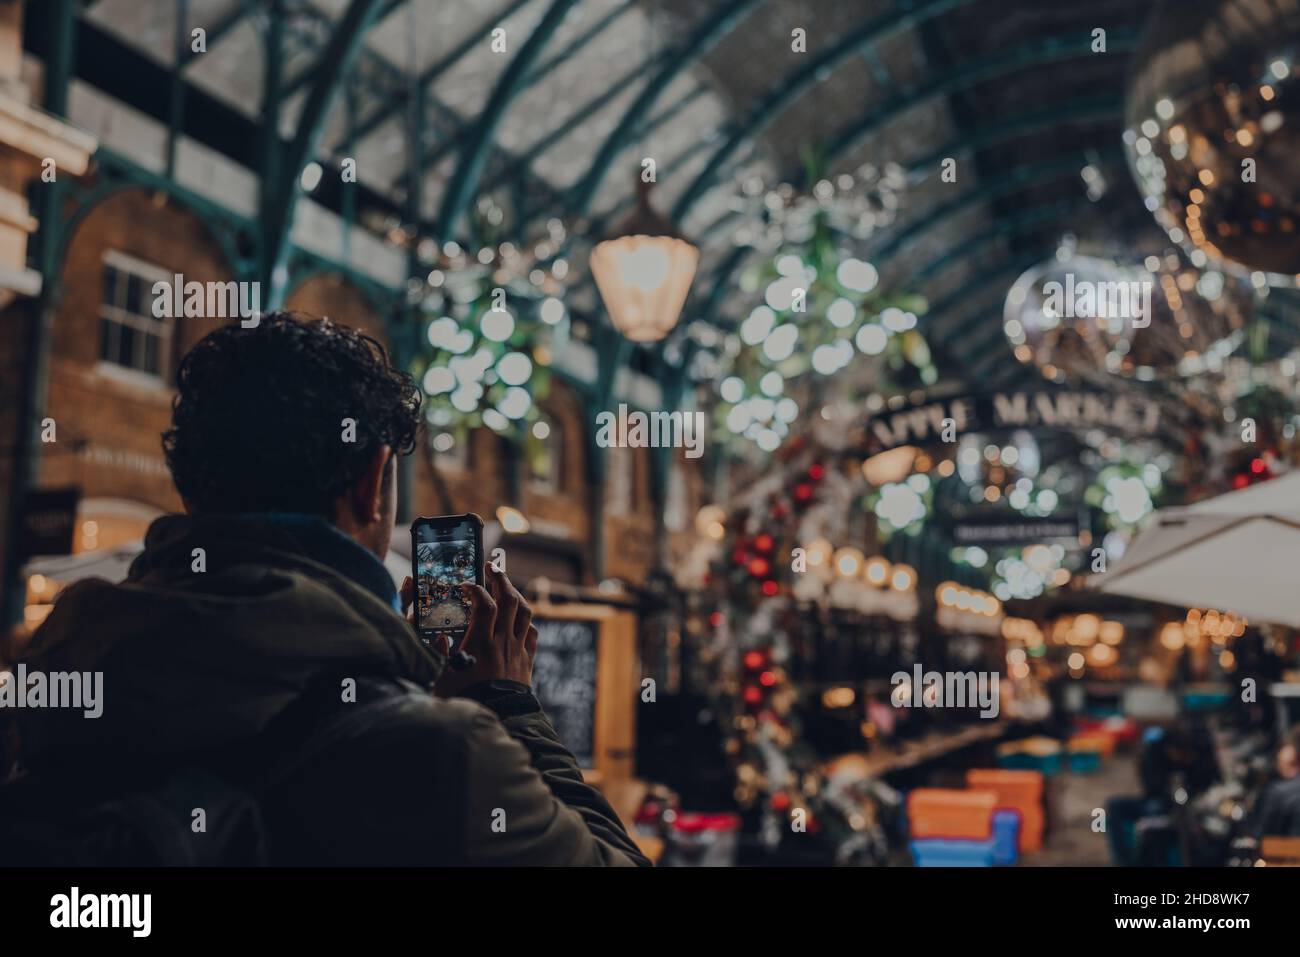 Londra, UK - 23 novembre 2021: Uomo che scatta foto delle decorazioni natalizie a Covent Garden Market, uno dei siti turistici più popolari di Londra, o Foto Stock